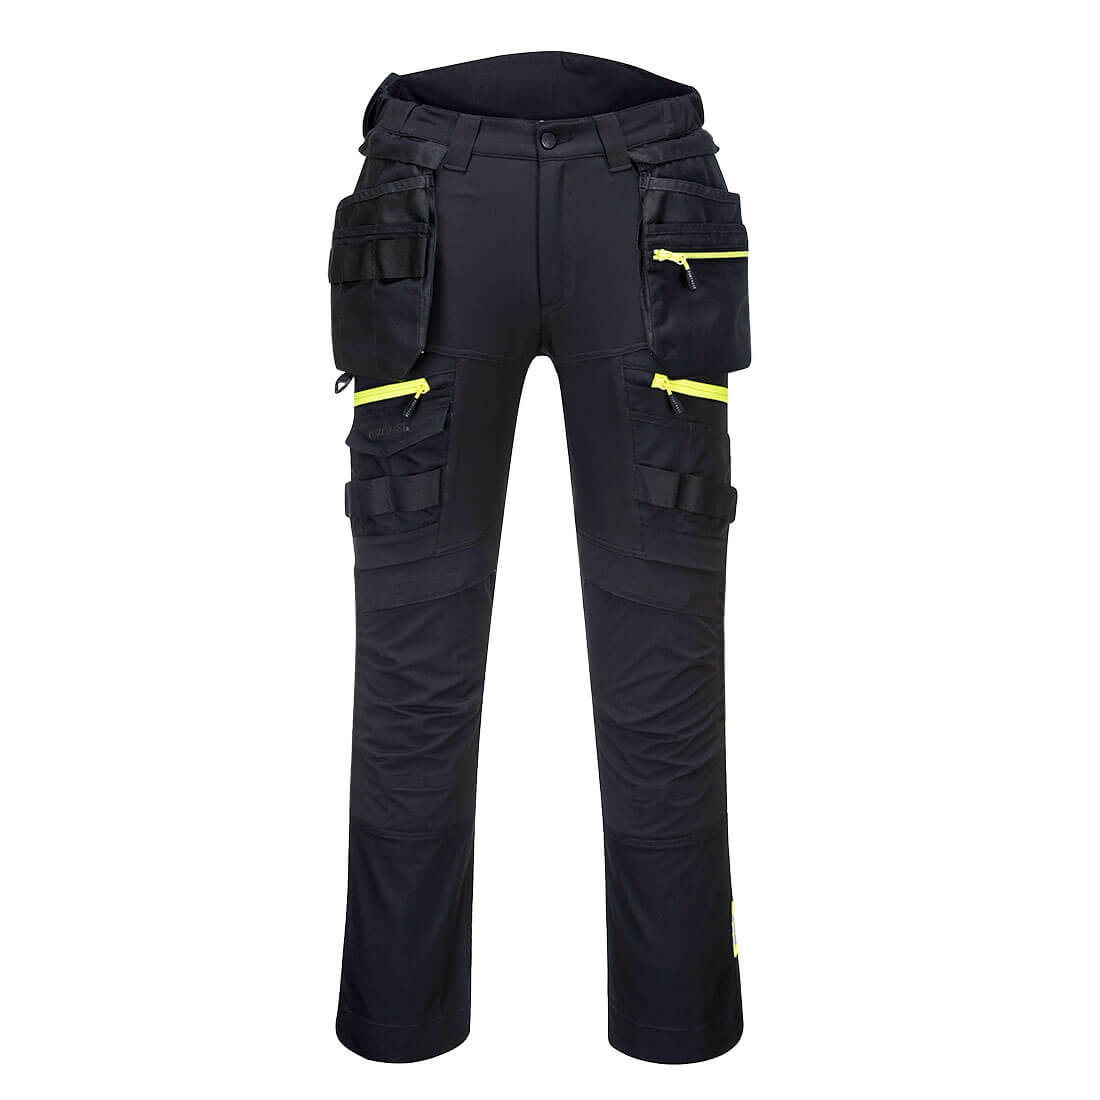 Pantalón DX4 Holster de alta visibilidad para mujer con bolsillos de pistolera desmontables - Ropa de protección